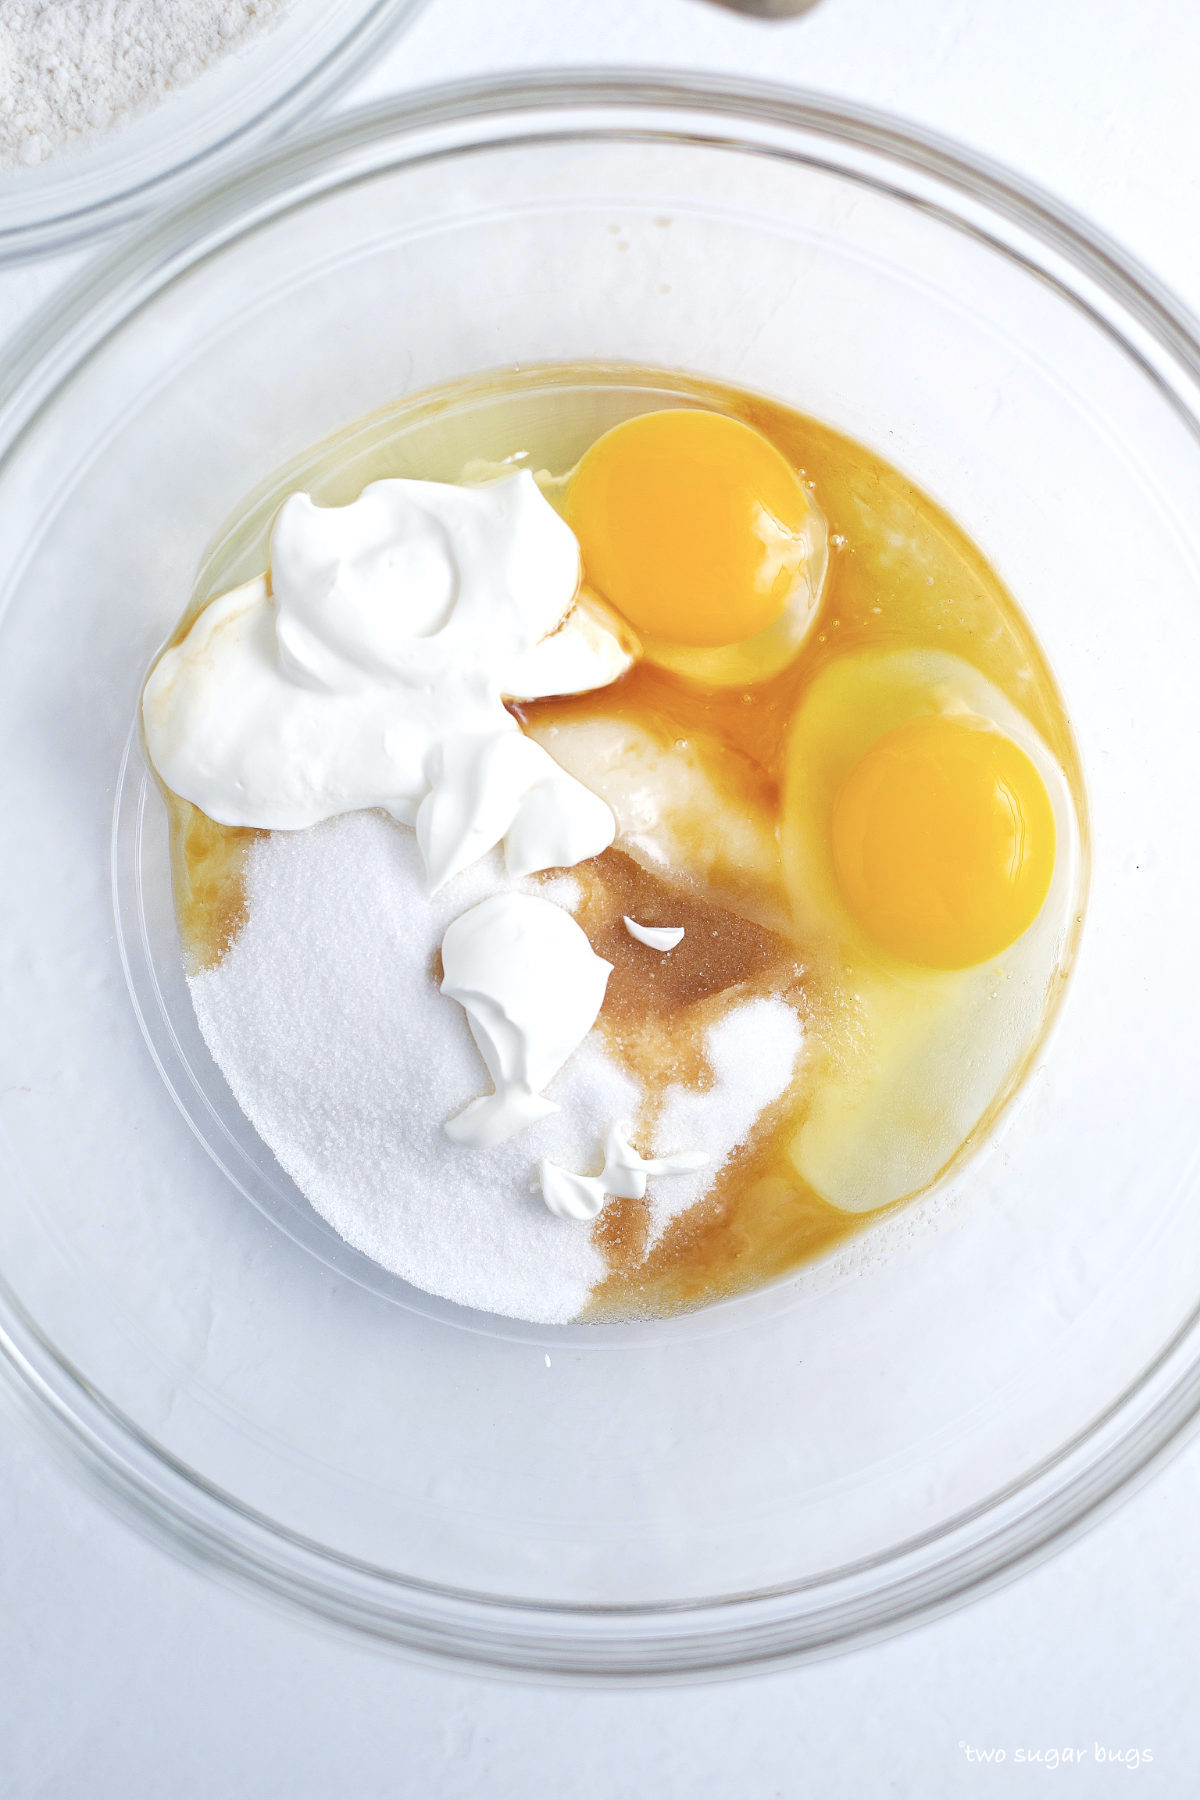 eggs, sour cream, sugar and vanilla in a bowl